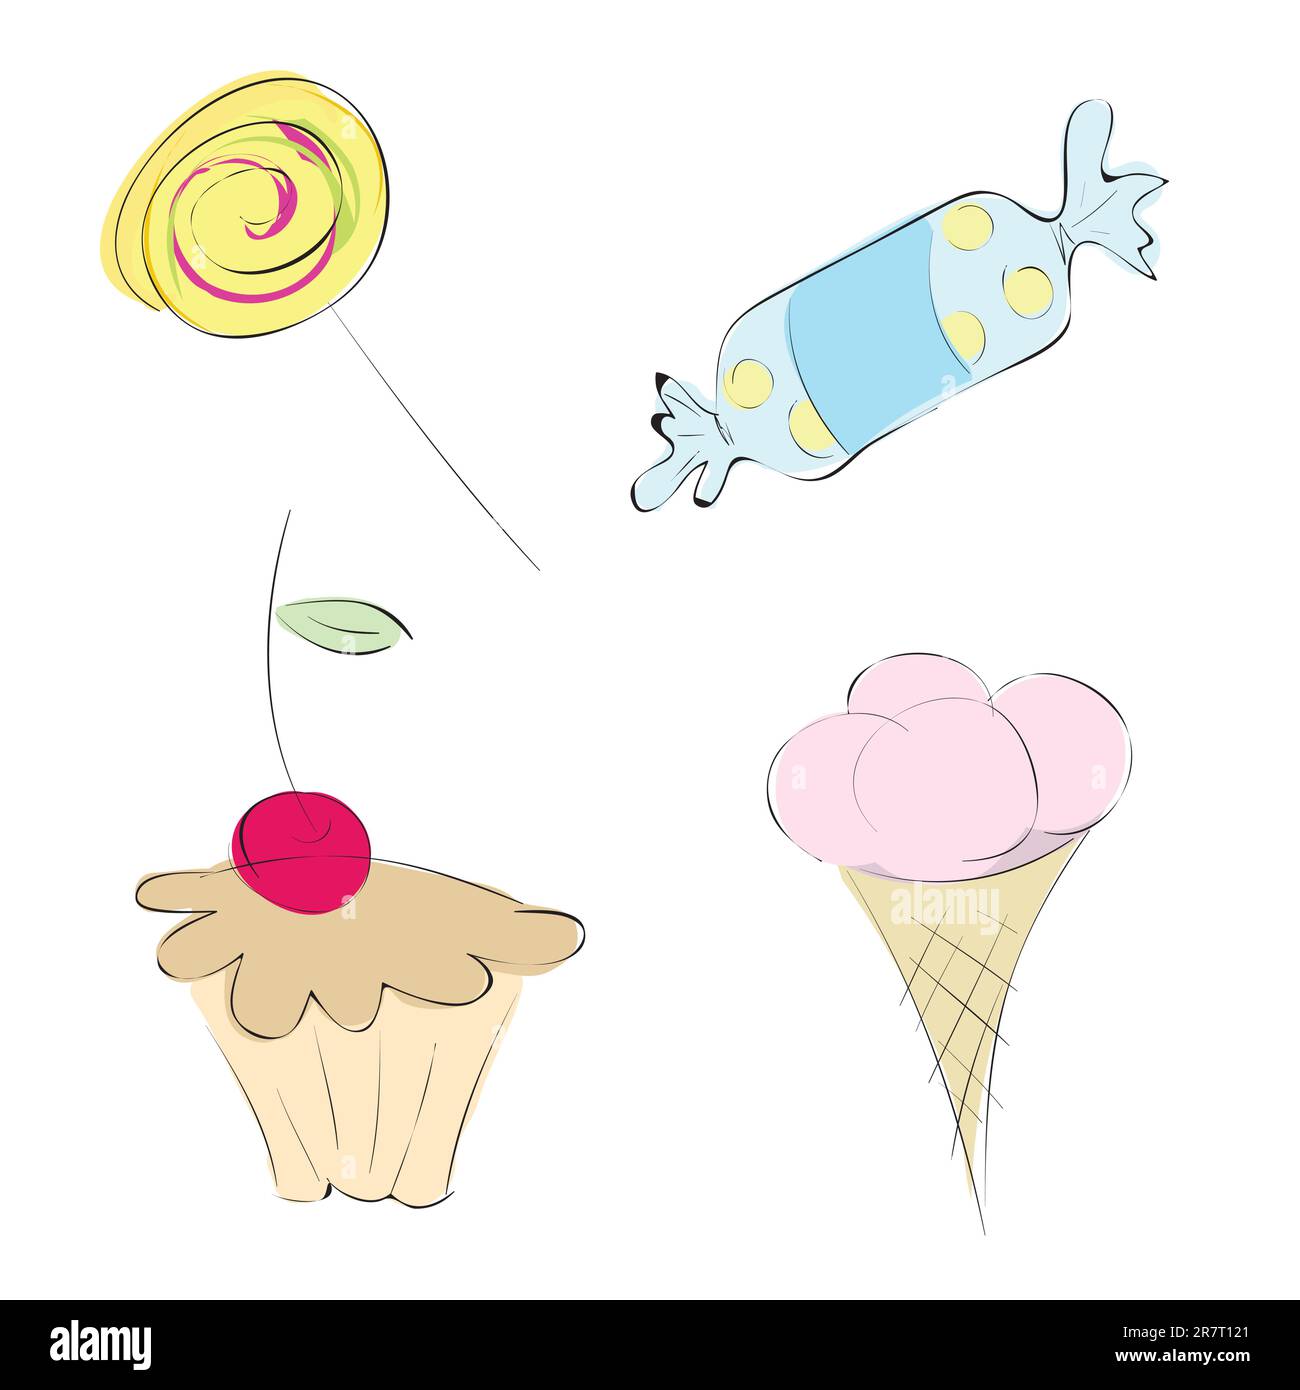 Vektor-Bilder in einer Vielzahl von Süßigkeiten. Set: Mini-Kuchen, Eis, Süßigkeiten und Karamell Stock Vektor